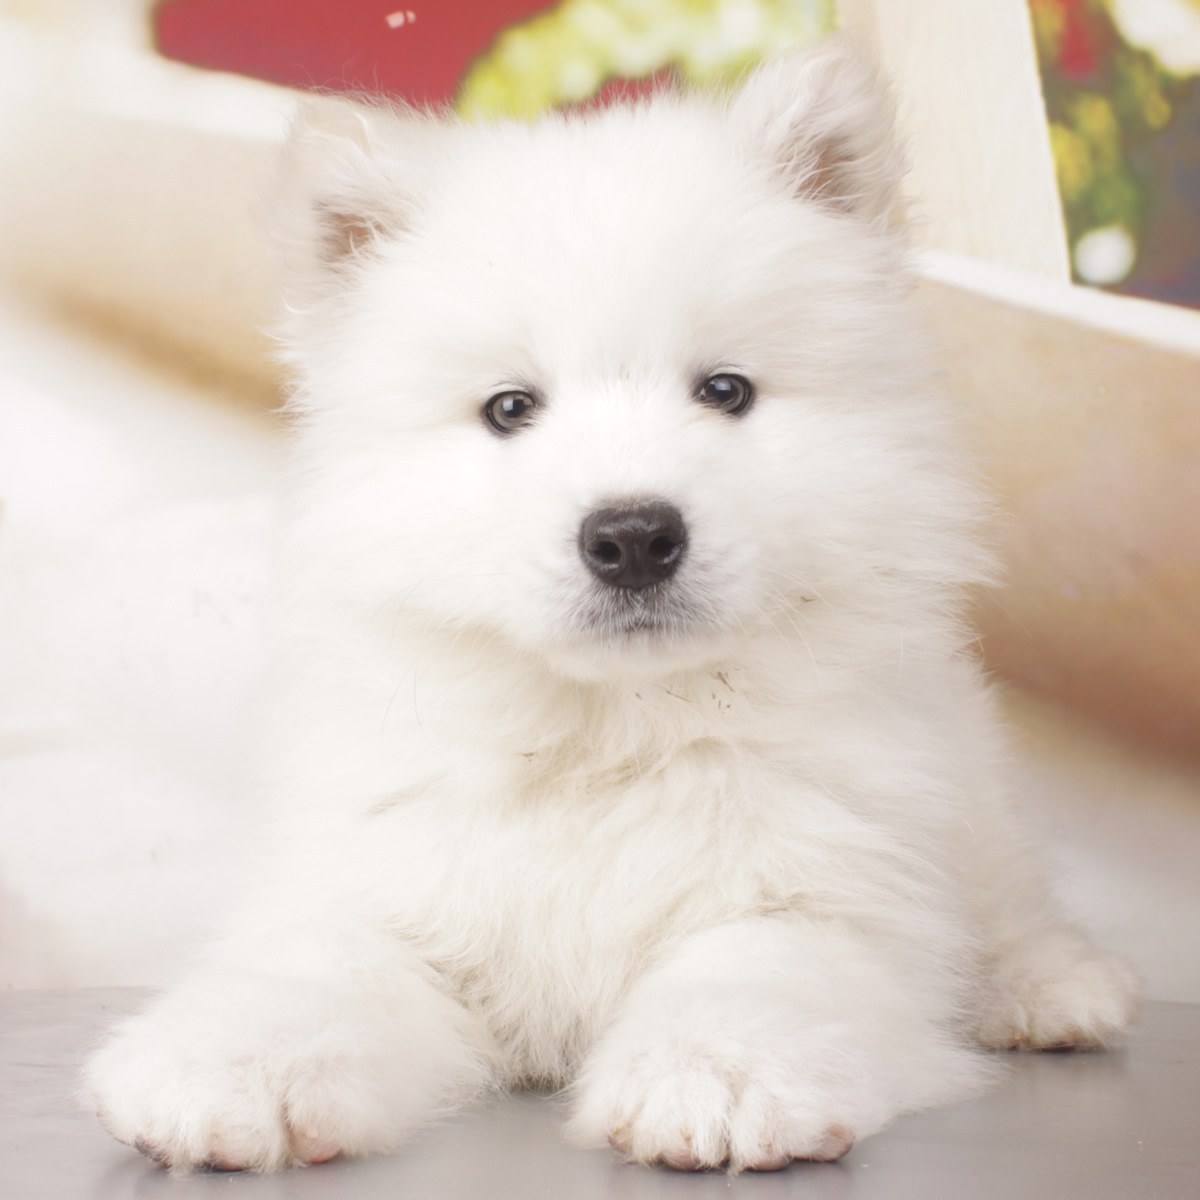 纯种萨摩耶犬幼犬狗狗出售 宠物萨摩耶犬可支付宝交易 萨摩耶犬 /编号10087400 - 宝贝它